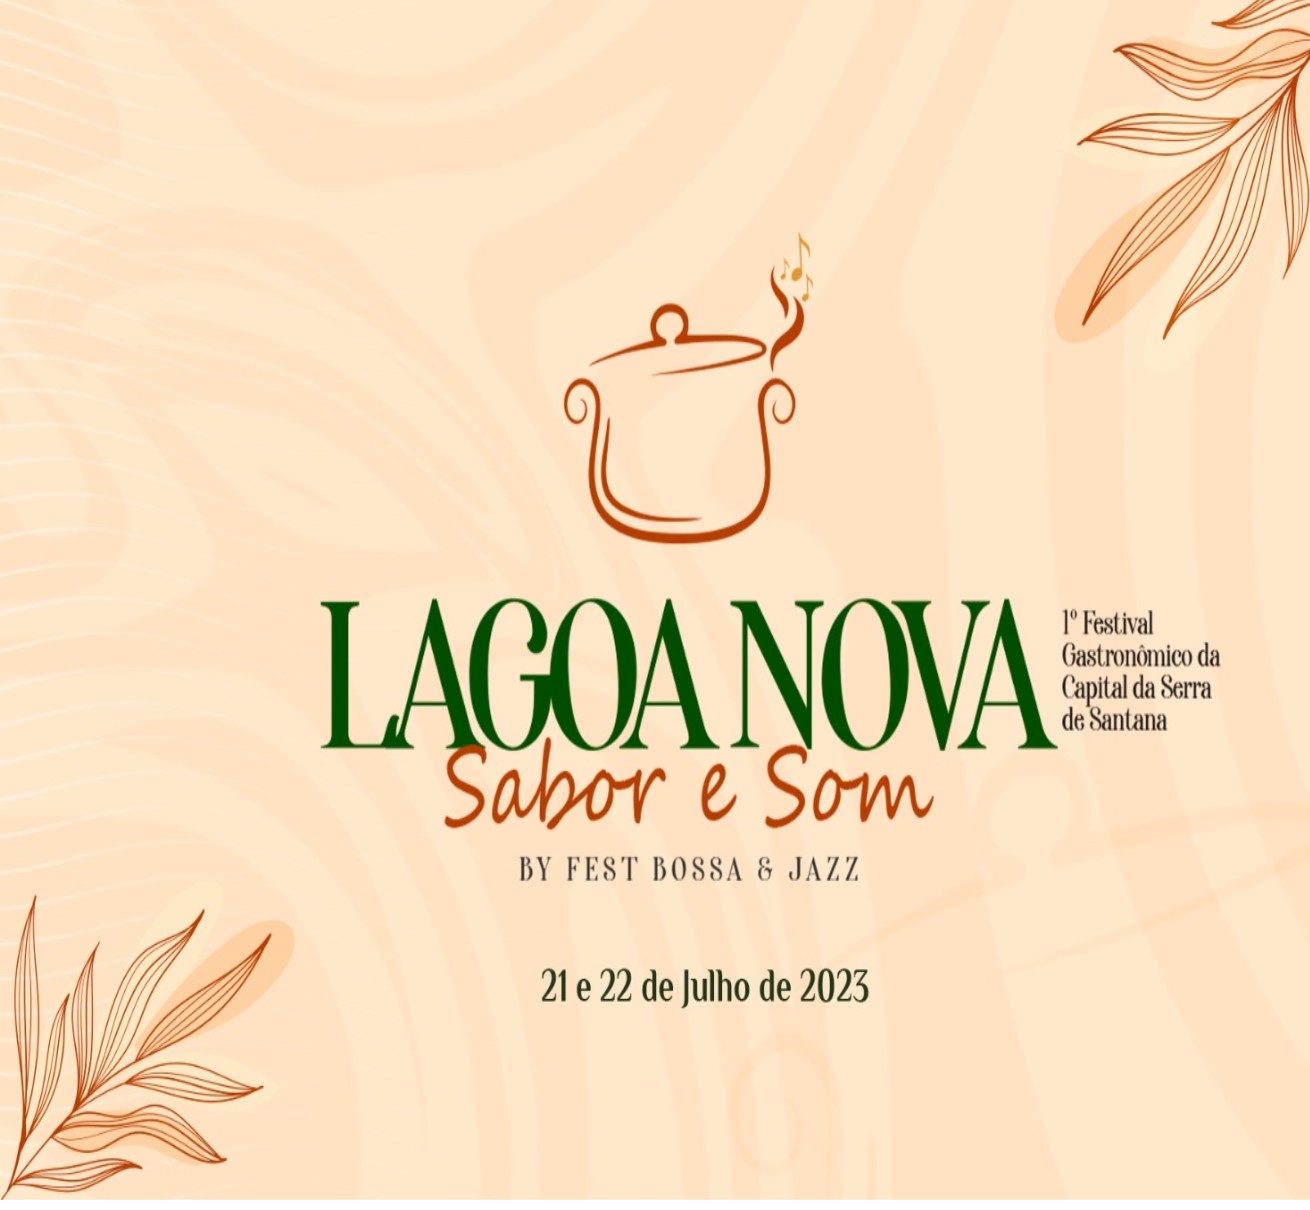 Vendas de mesas para o 1º Festival Gastronômico Lagoa Nova Sabor e Som By Fest Bossa e Jazz, estão esgotadas